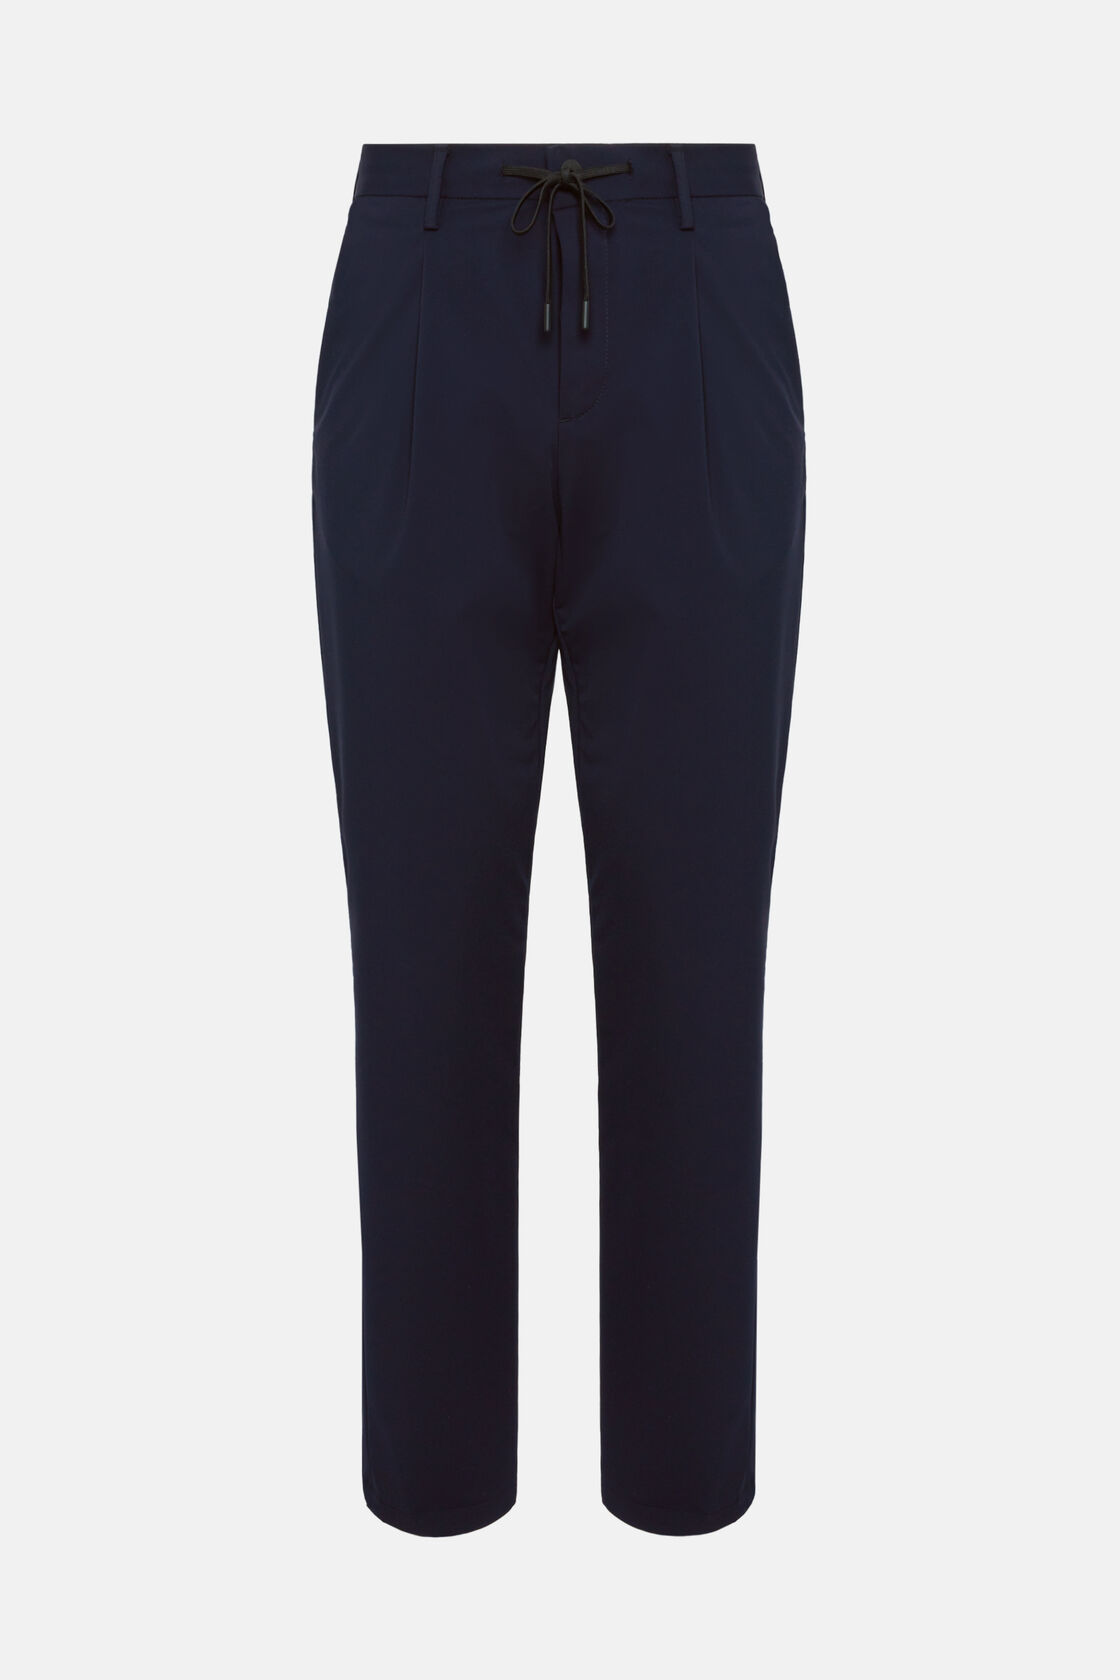 Spodnie z elastycznego nylonu B-Tech, Navy blue, hi-res